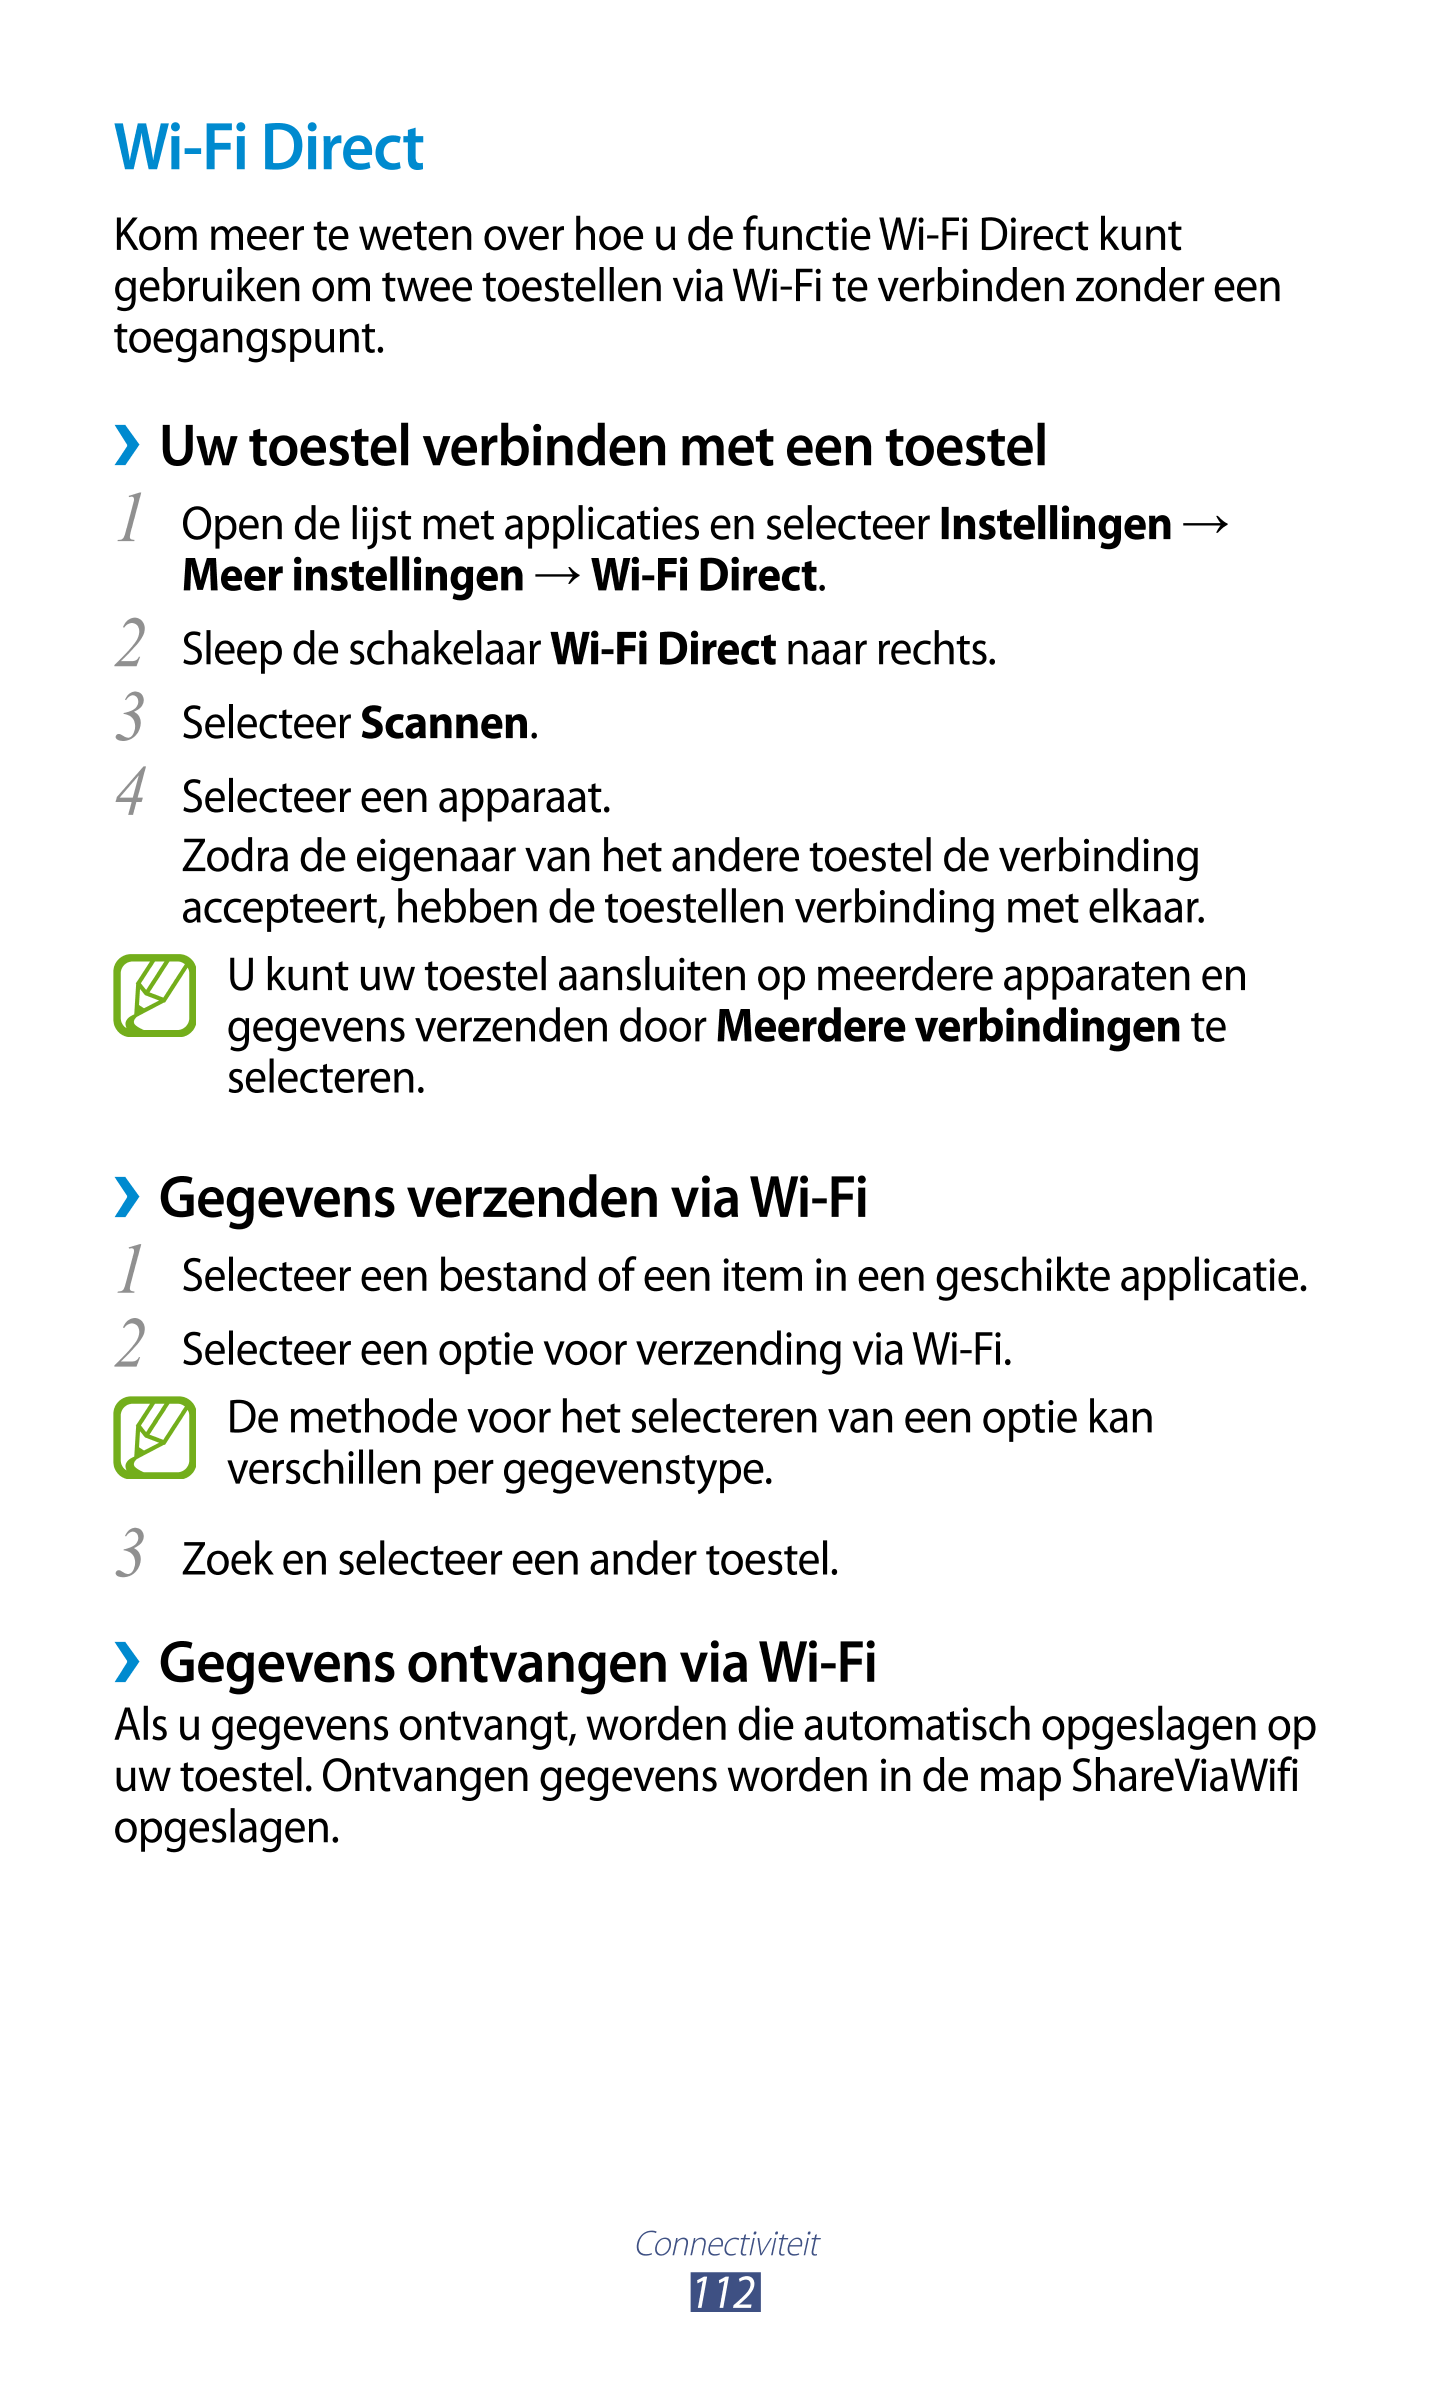 Wi-Fi Direct
Kom meer te weten over hoe u de functie Wi-Fi Direct kunt 
gebruiken om twee toestellen via Wi-Fi te verbinden zond